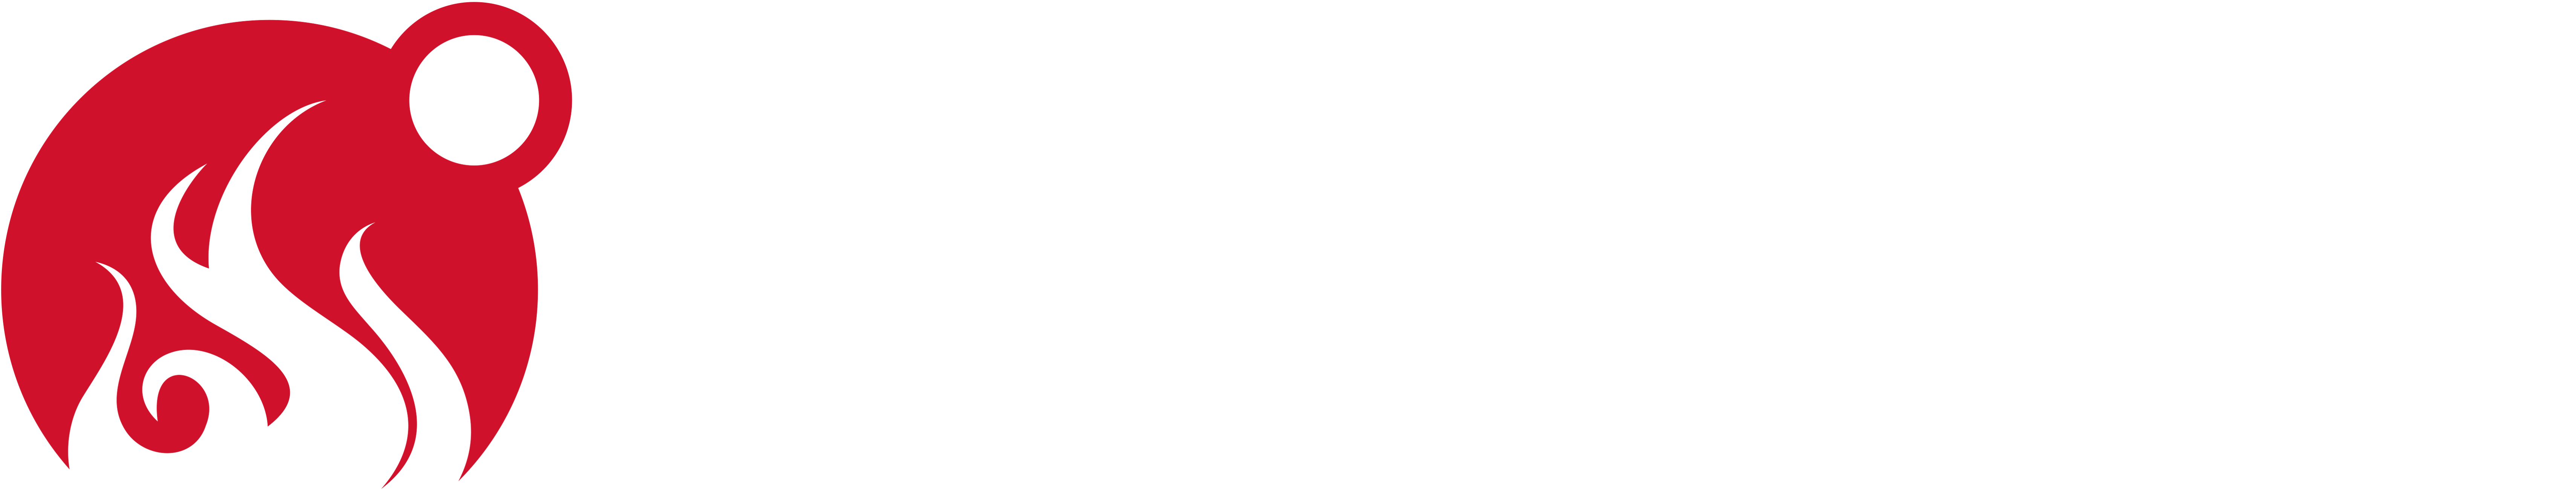 Meater-logo